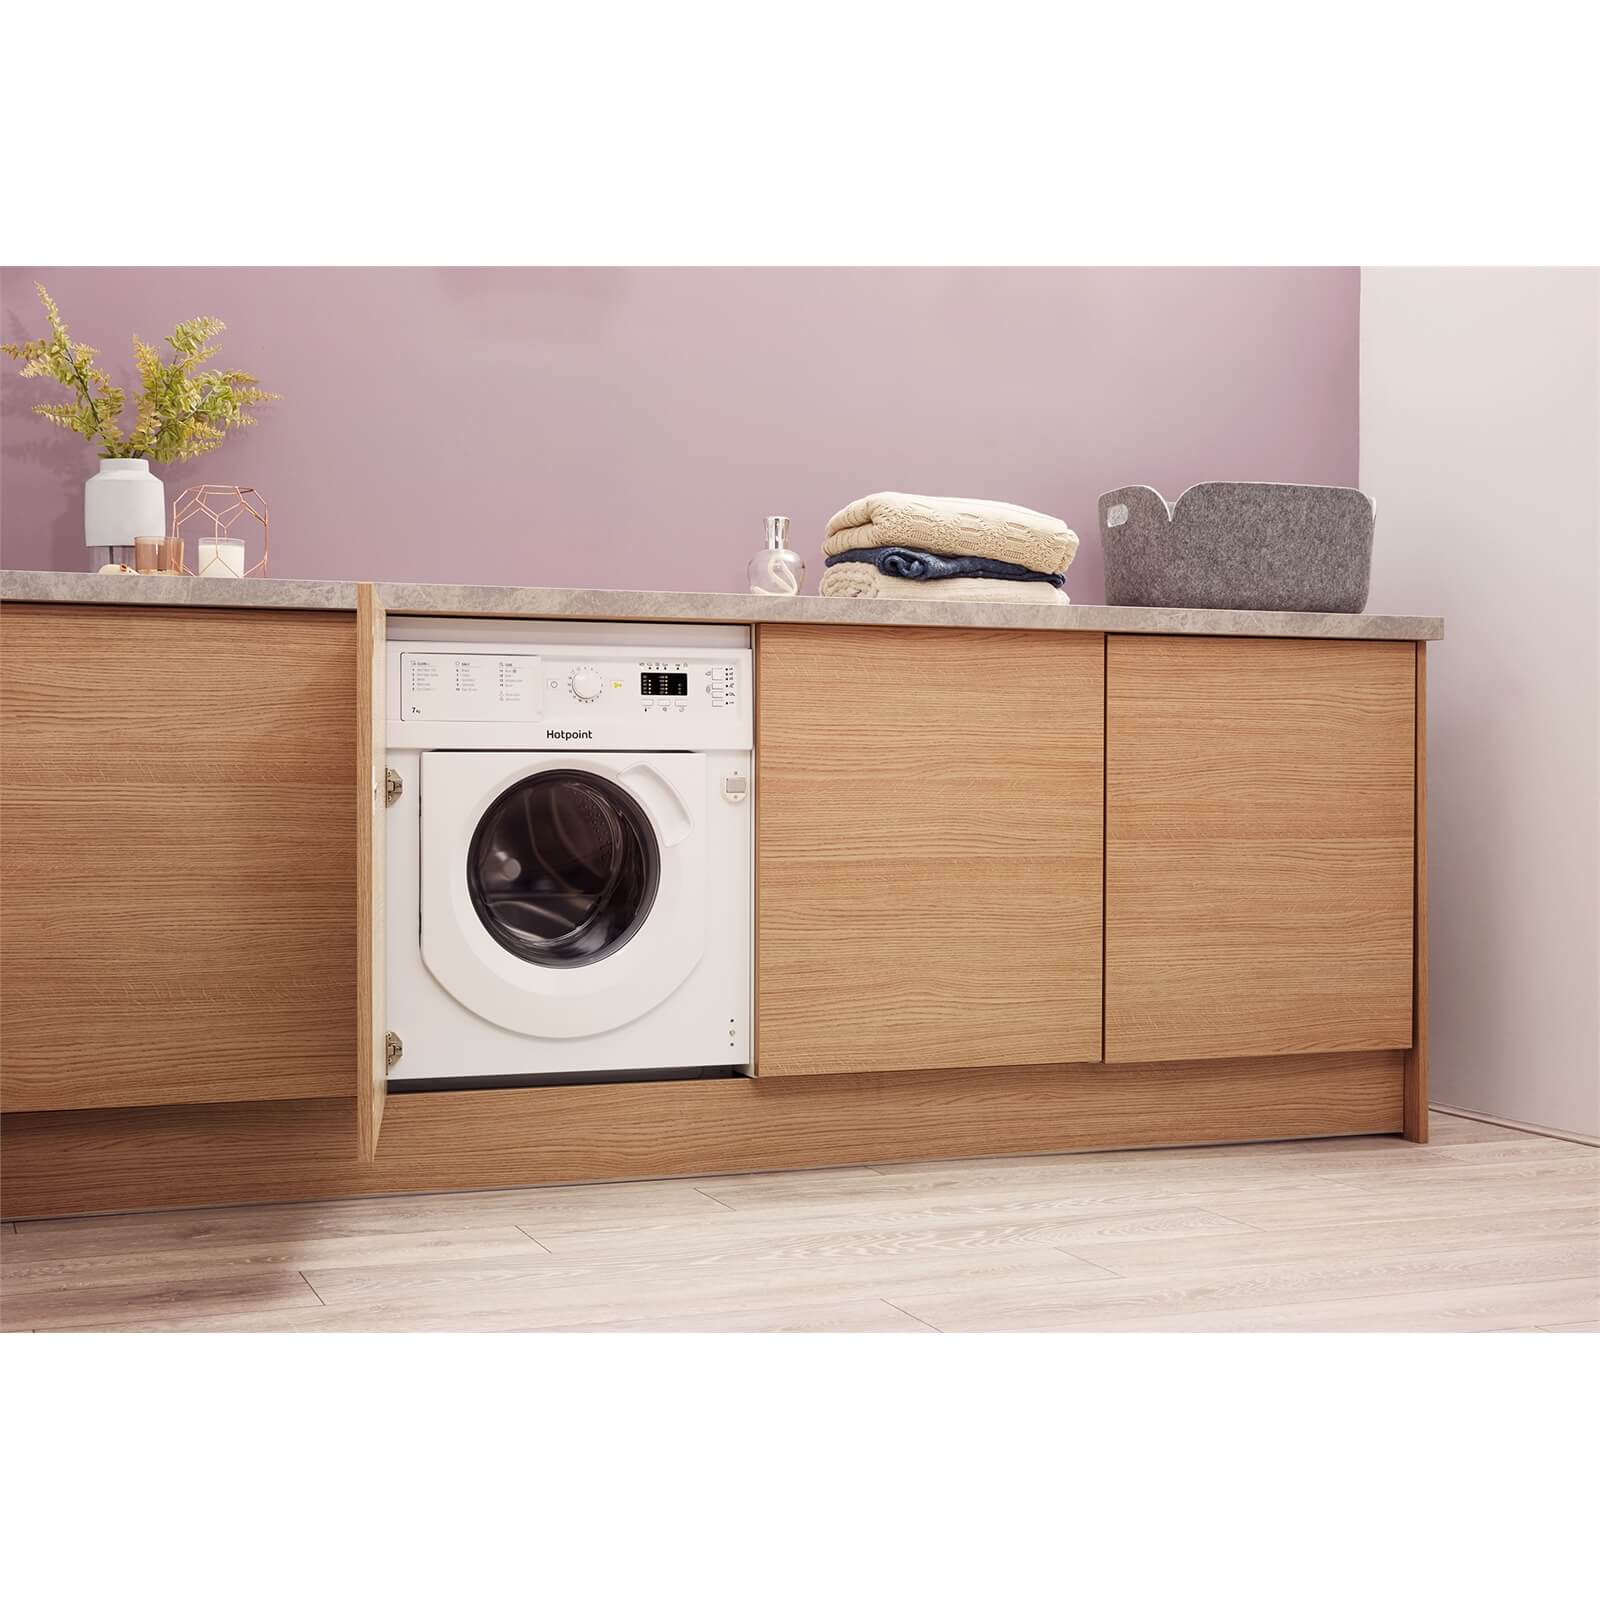 Hotpoint BI WMHL 71453 UK Integrated Washing Machine - White